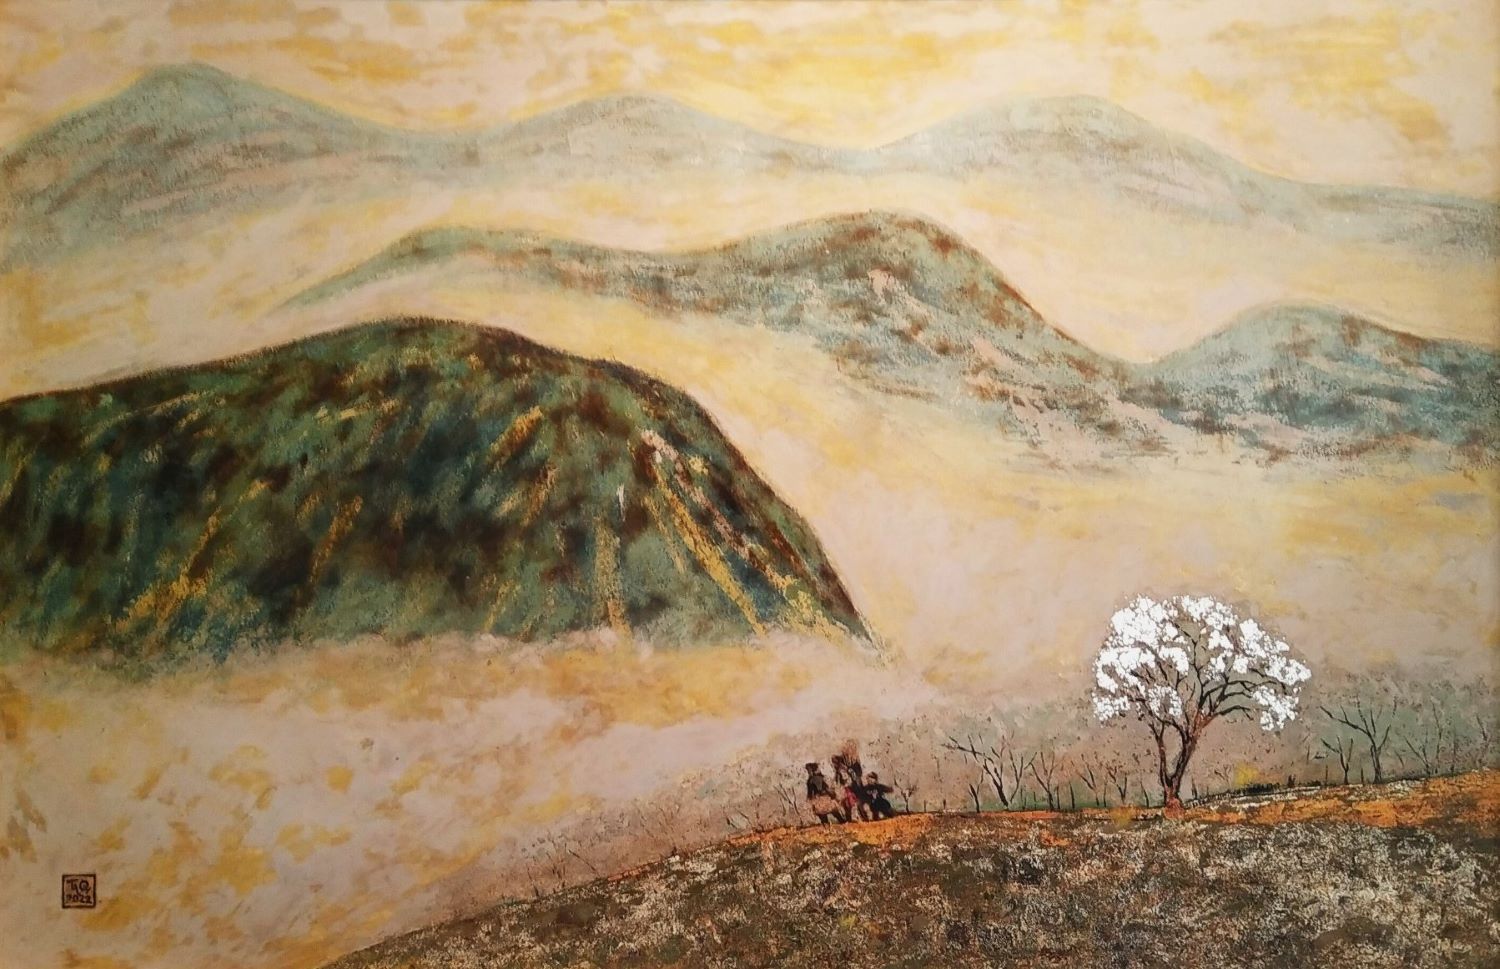 White Dew, Vietnamese Lacquer Painting, Truong Trong Quyen: Bức tranh sơn mài Việt Nam của Trương Trọng Quyền, mang tên \